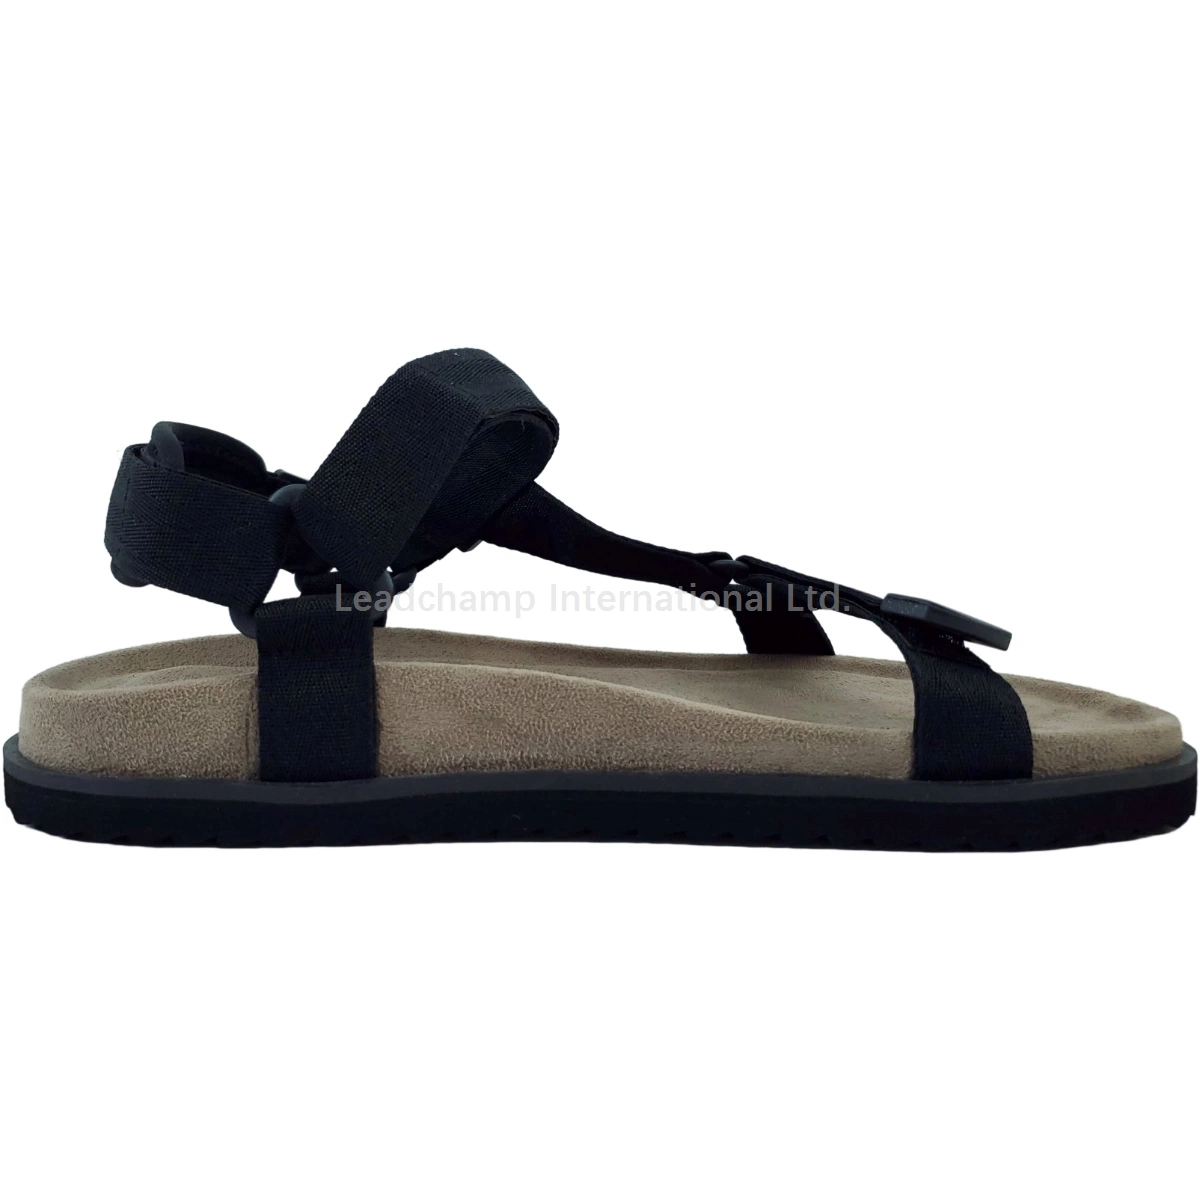 Homens confortáveis Cork palmilha casual Sandals Shoes Braids partes superiores Sandals